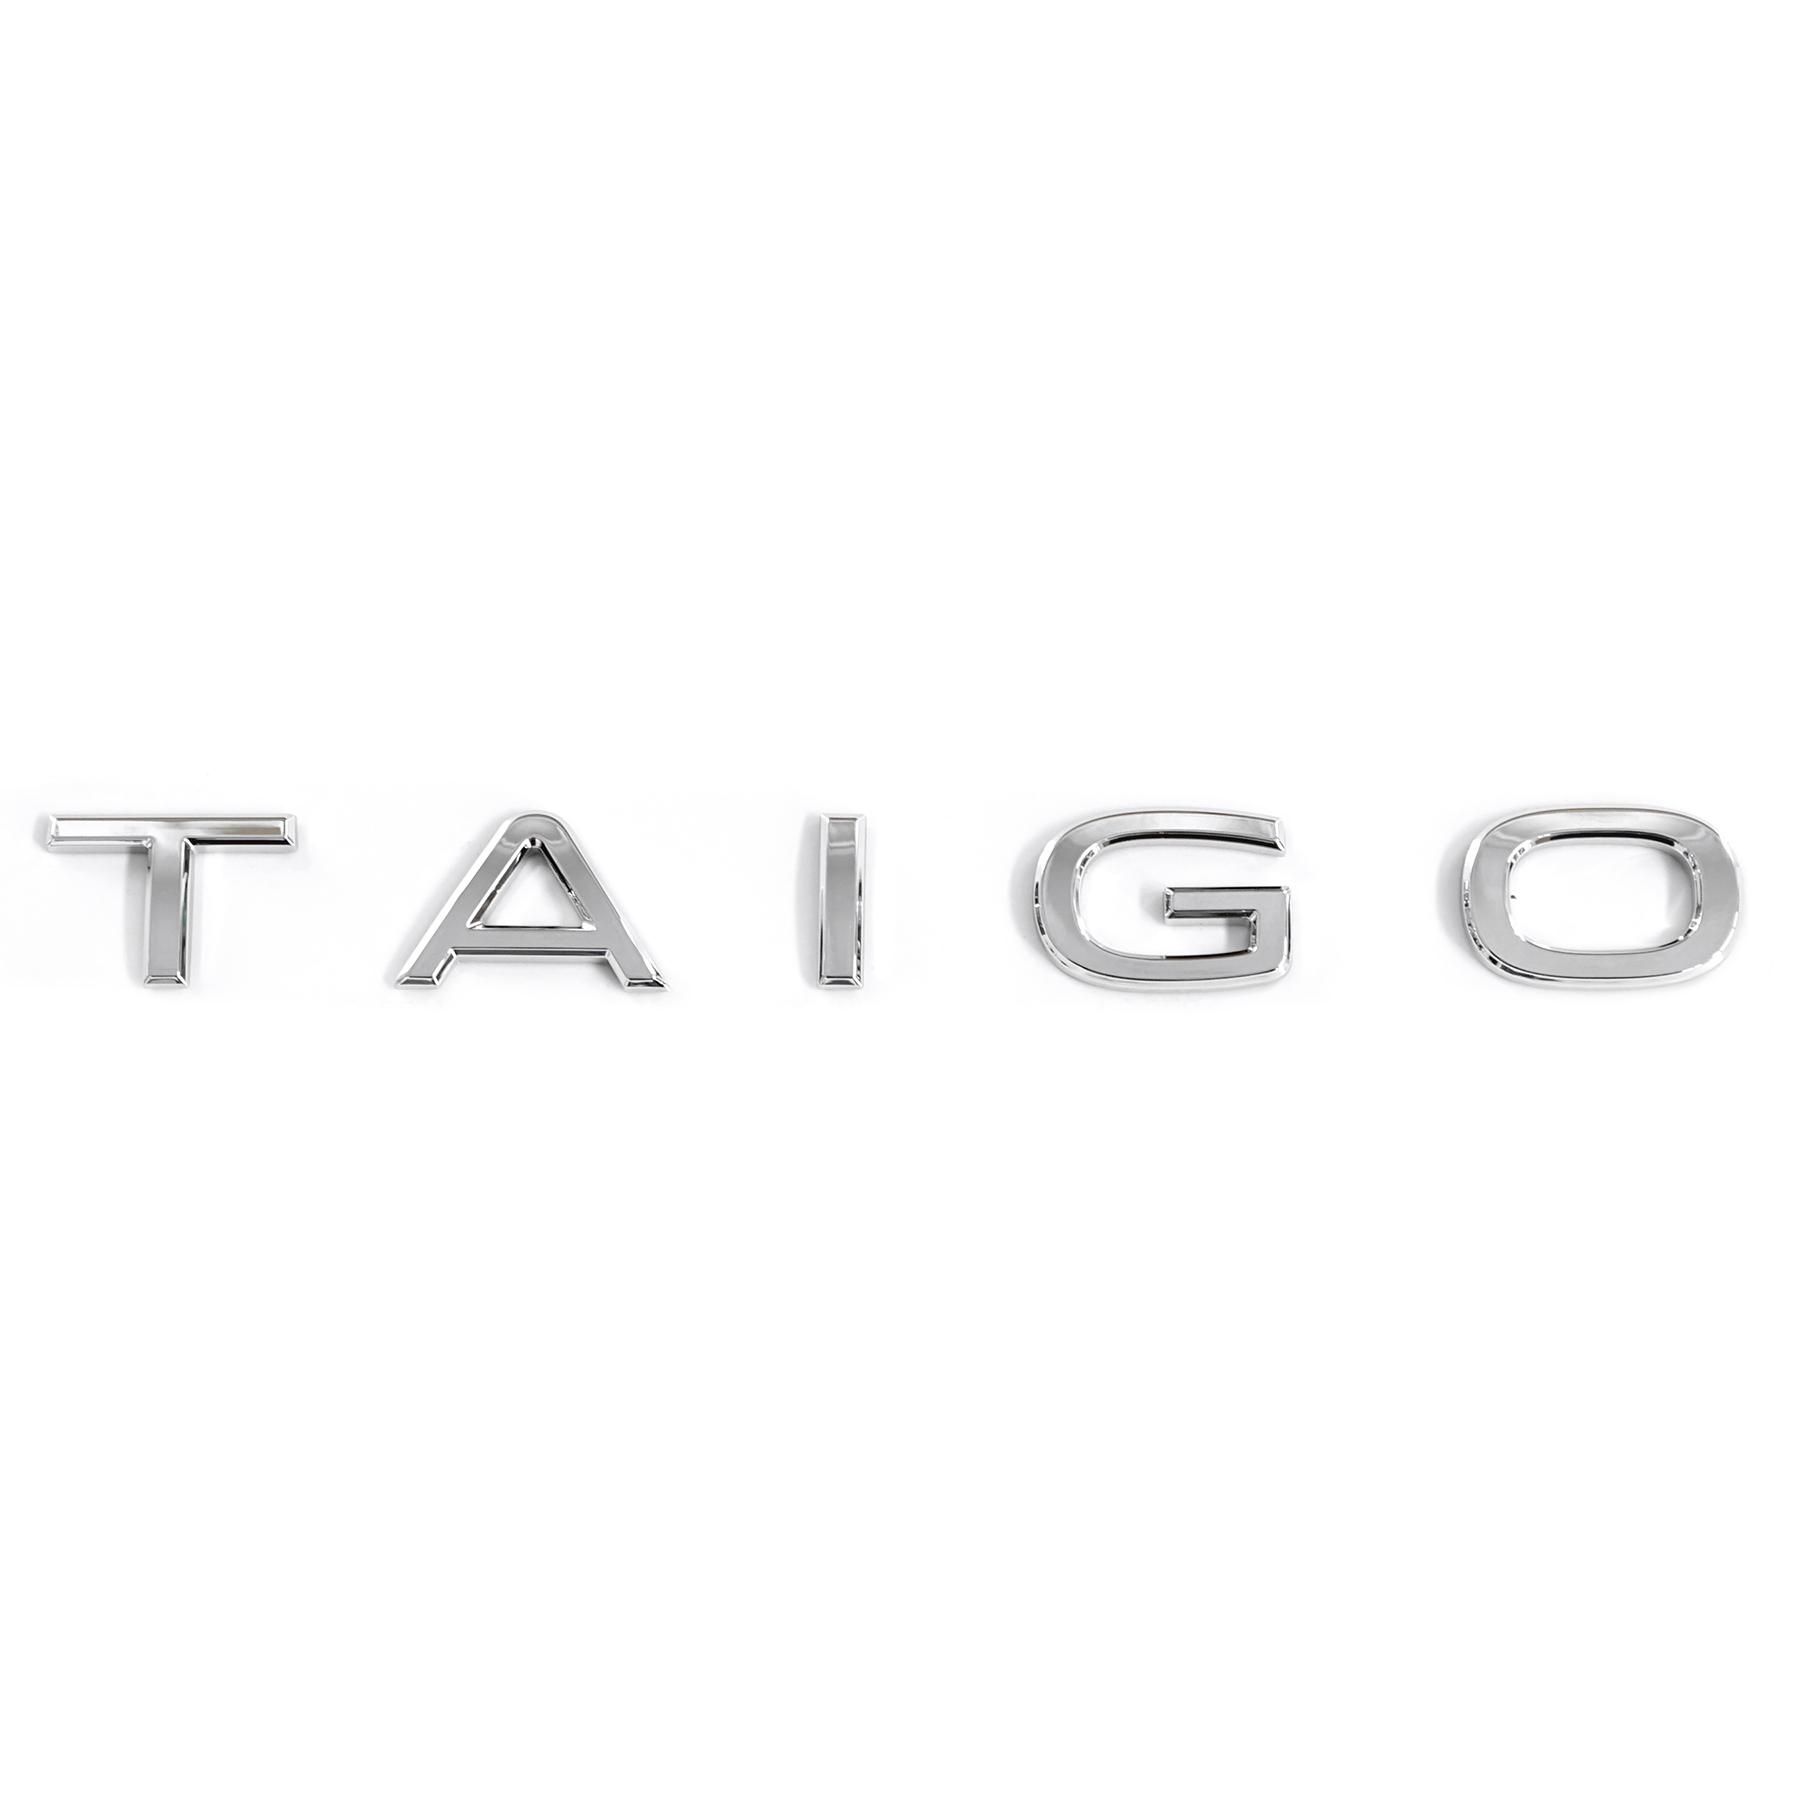 Emblema adesivo posteriore logo Taigo originale Volkswagen